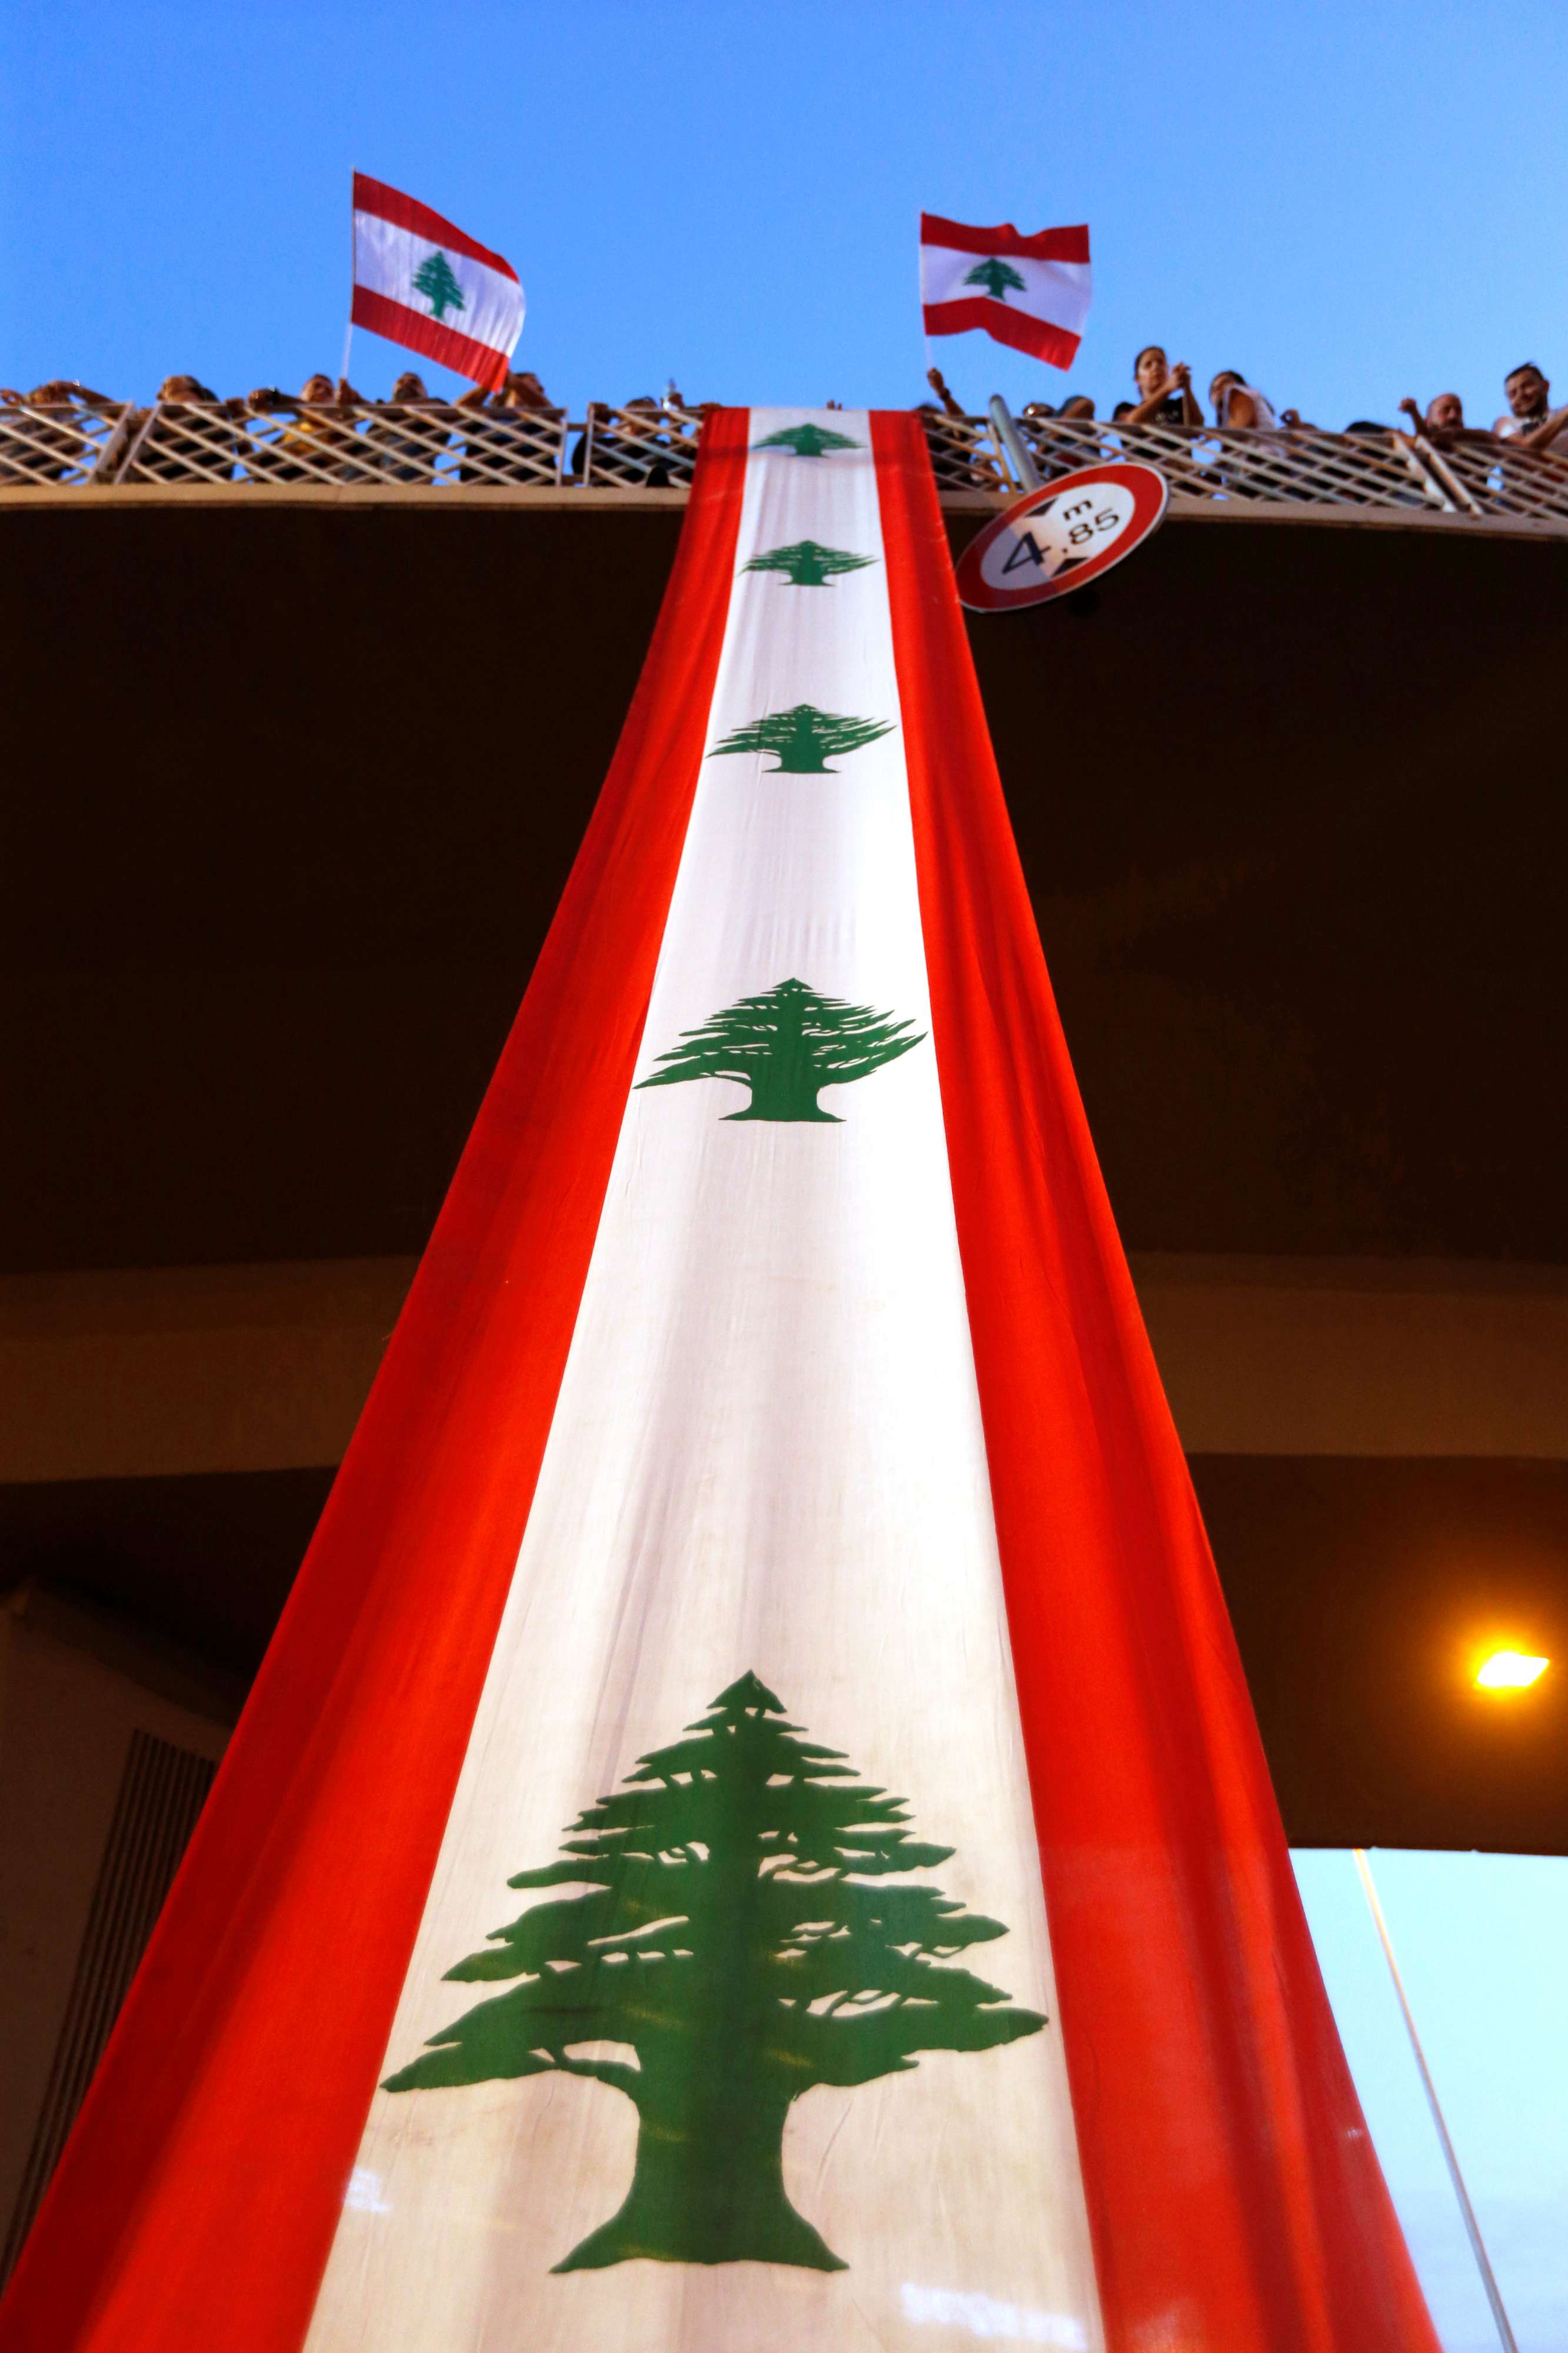 احتجاجات لبنان لم ترفع إلا العلم اللبناني عابرة للطوائف